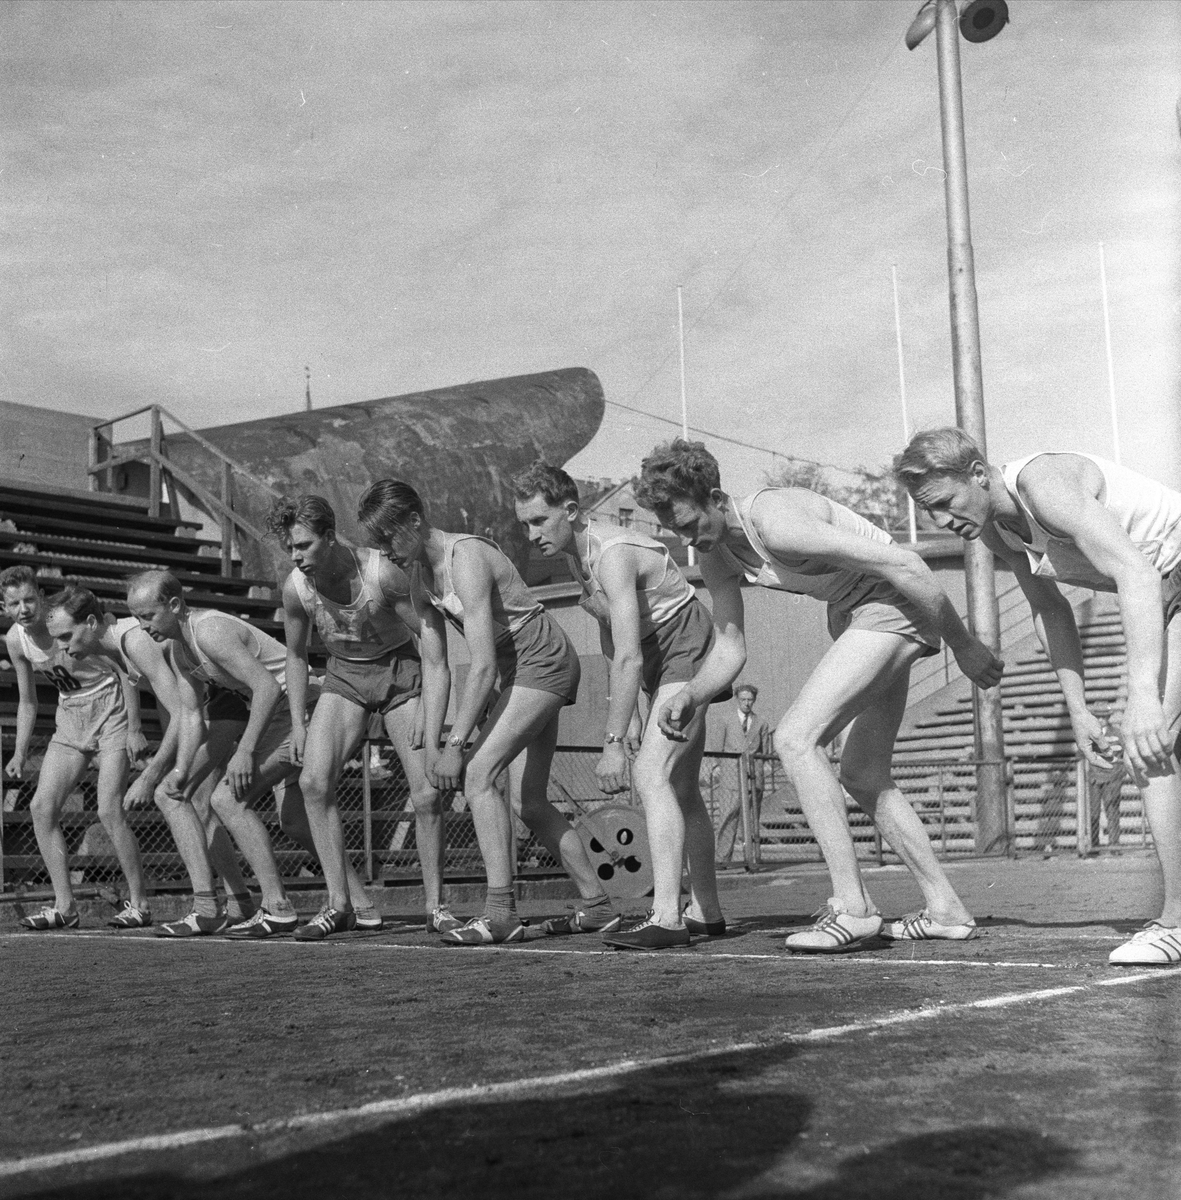 Norge, 17.09.1956. Bygdelag. Nordfjordlaget. Trøndere. Idrettstevne, løp.